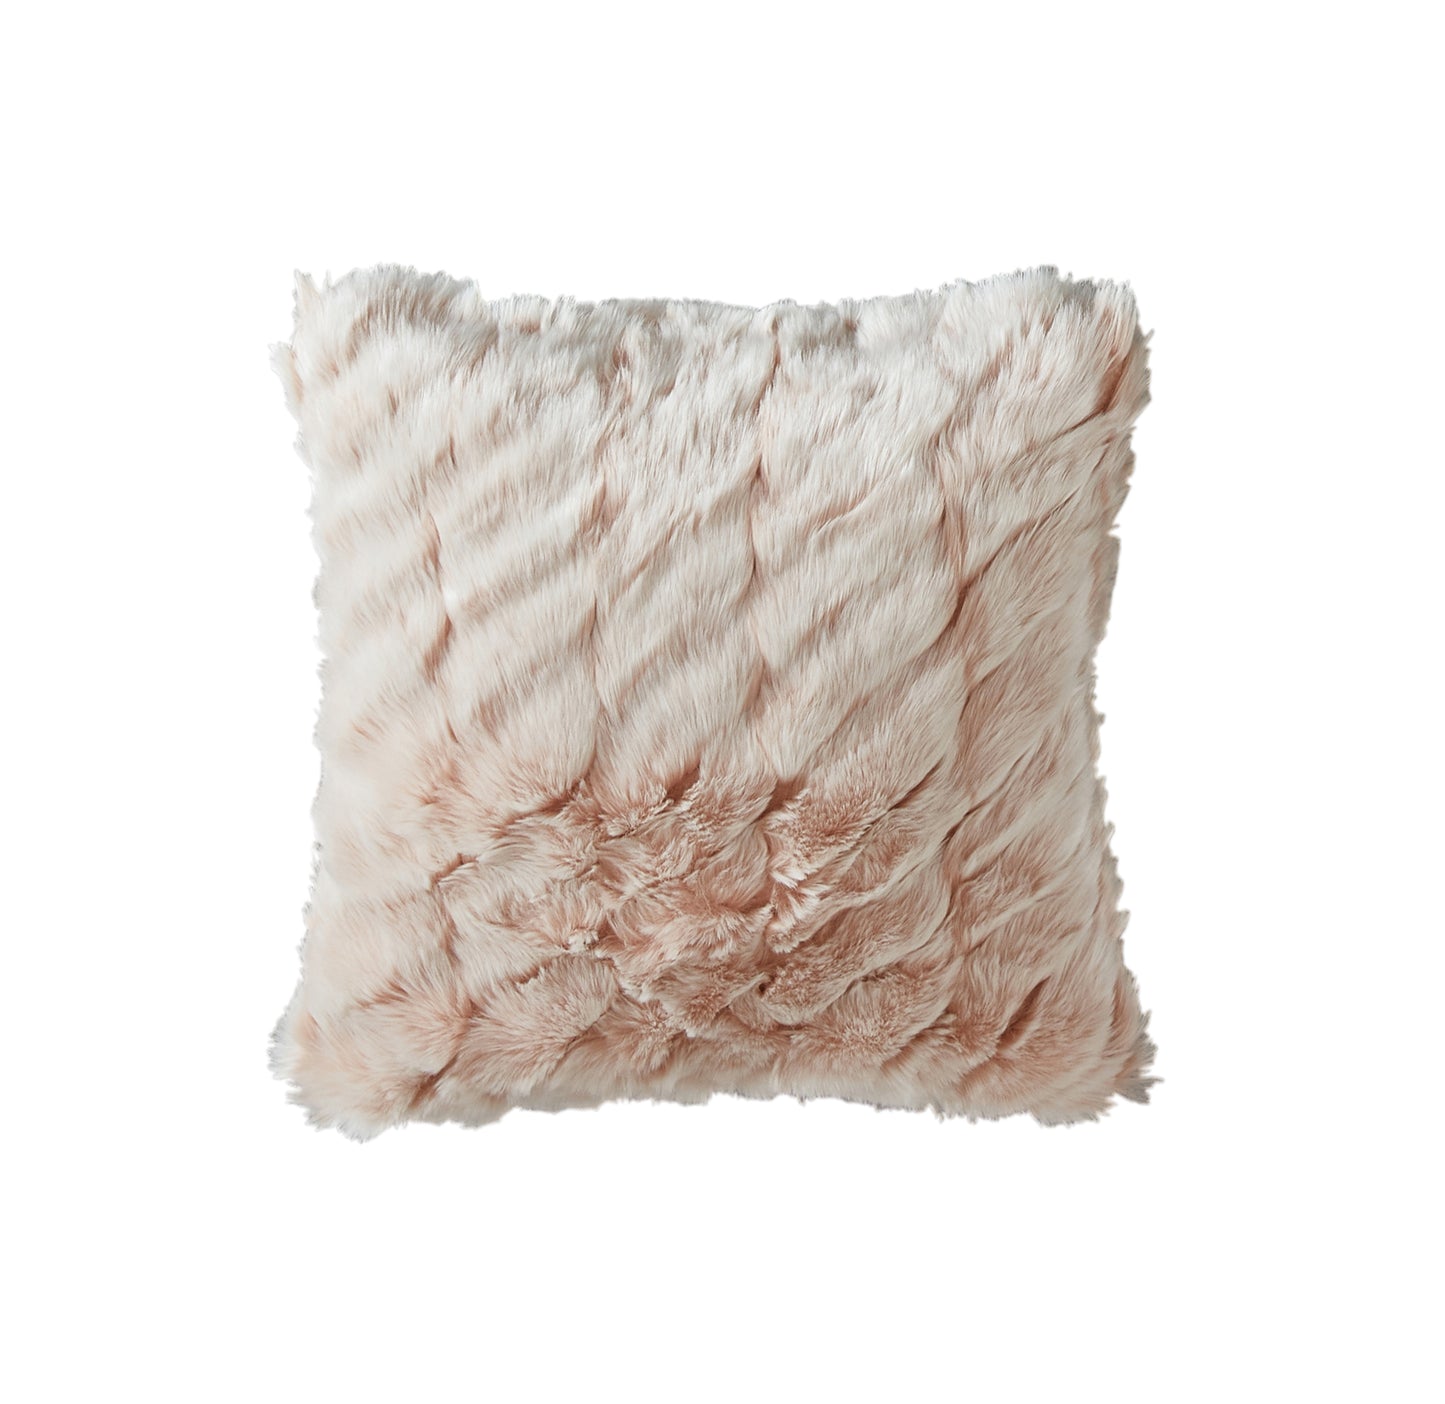 ALL SALES FINAL Michael Aram Faux Fur Decorative Pillow